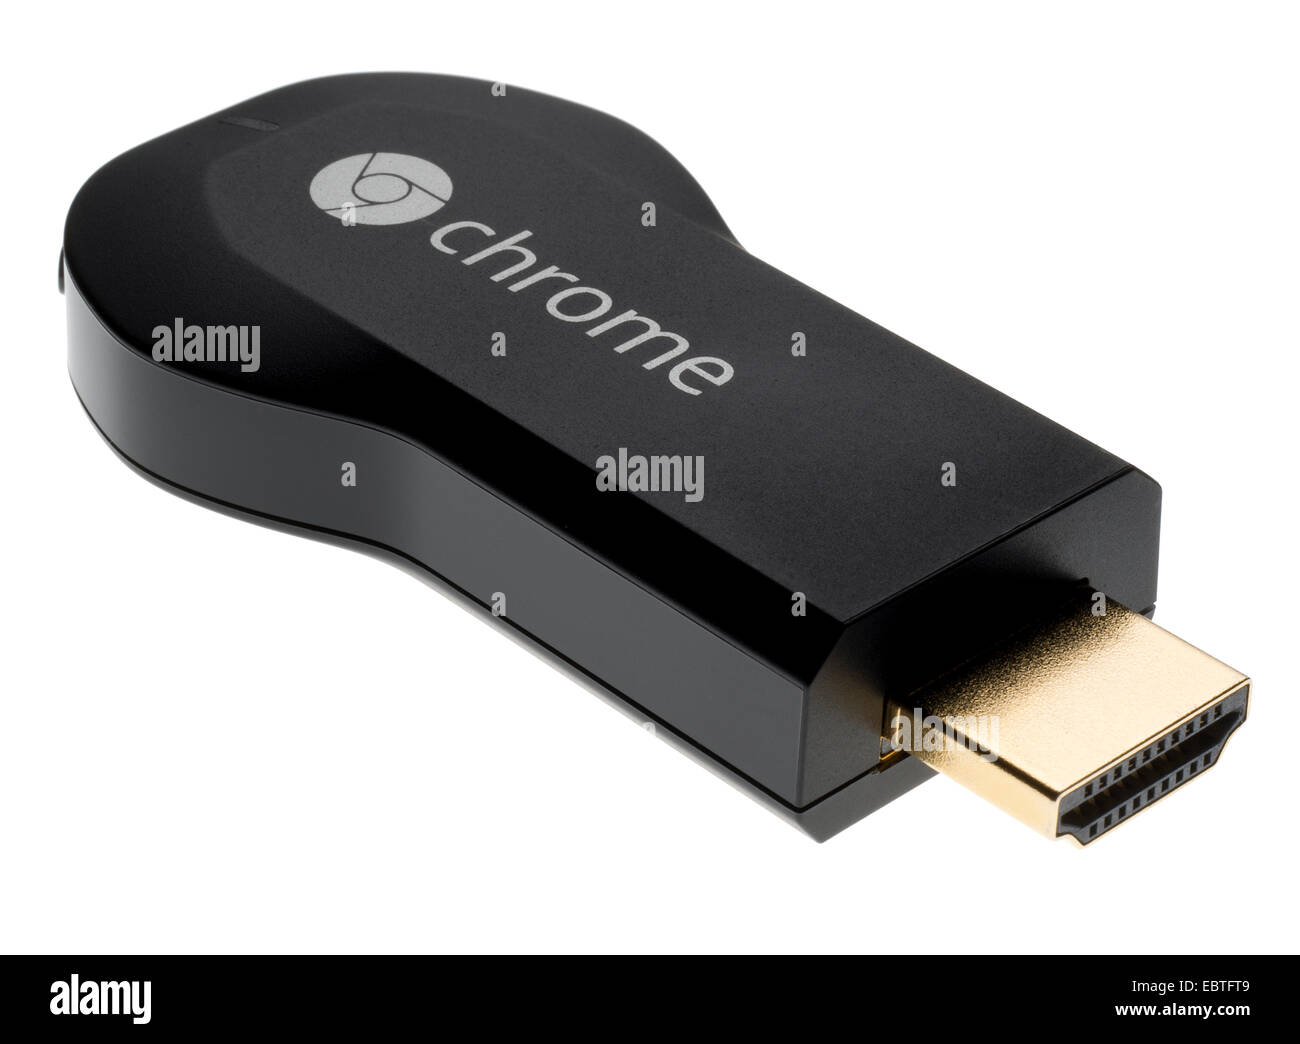 Google Chromecast media streaming appareil qui se branche sur port HDMI sur un téléviseur HD. Distribution d'eau ou un contenu à votre téléviseur. Banque D'Images